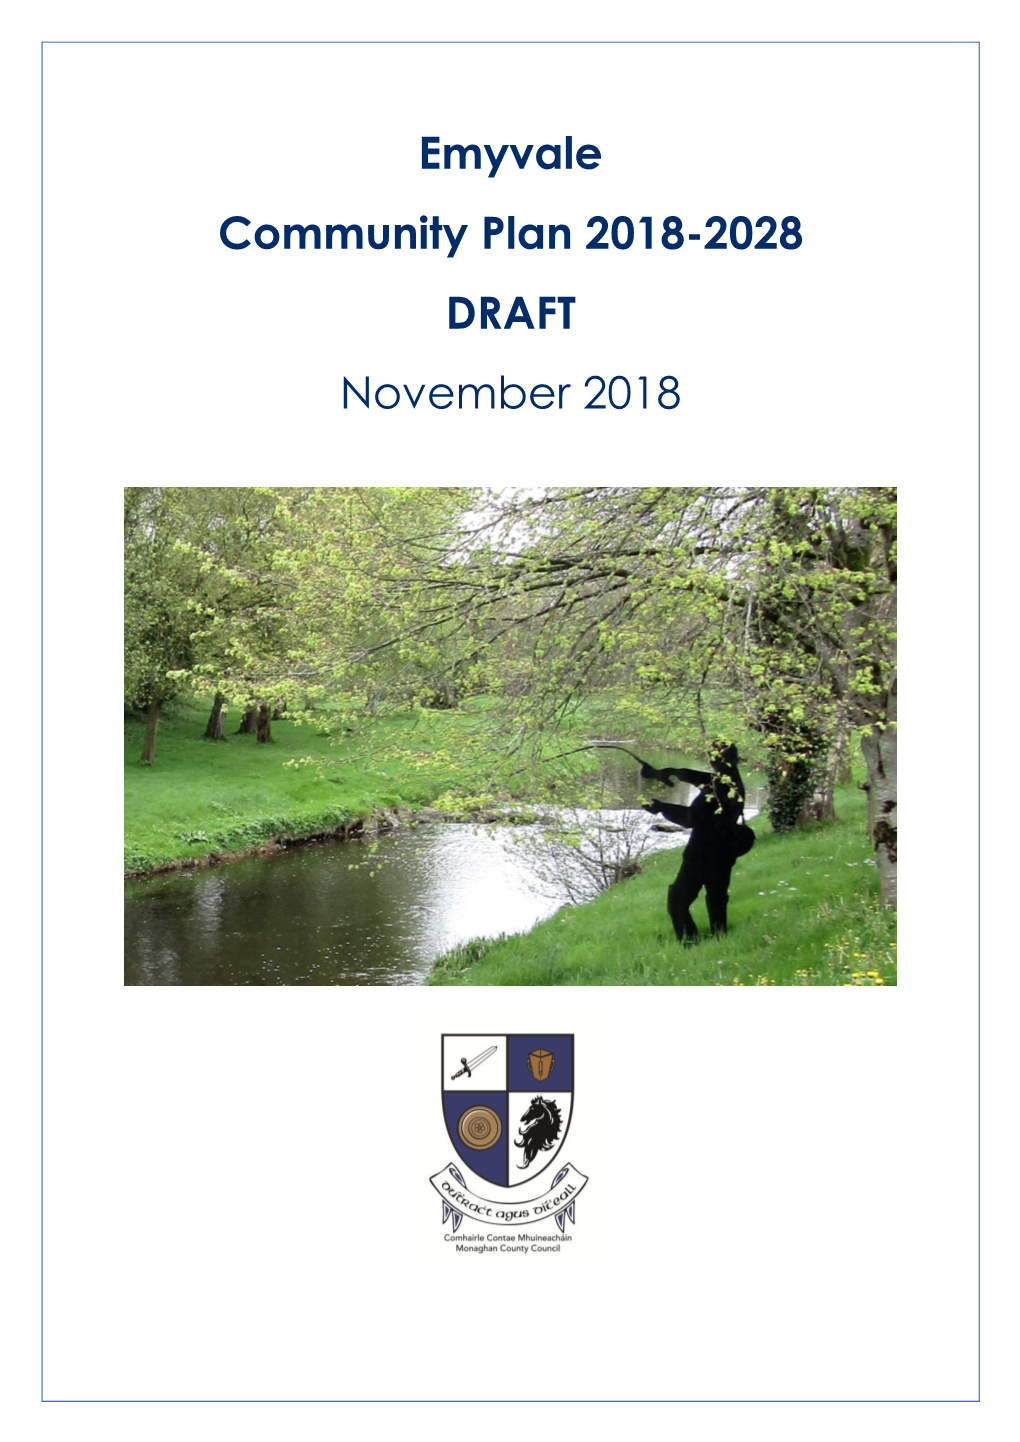 Emyvale Community Plan 2018-2028 DRAFT November 2018